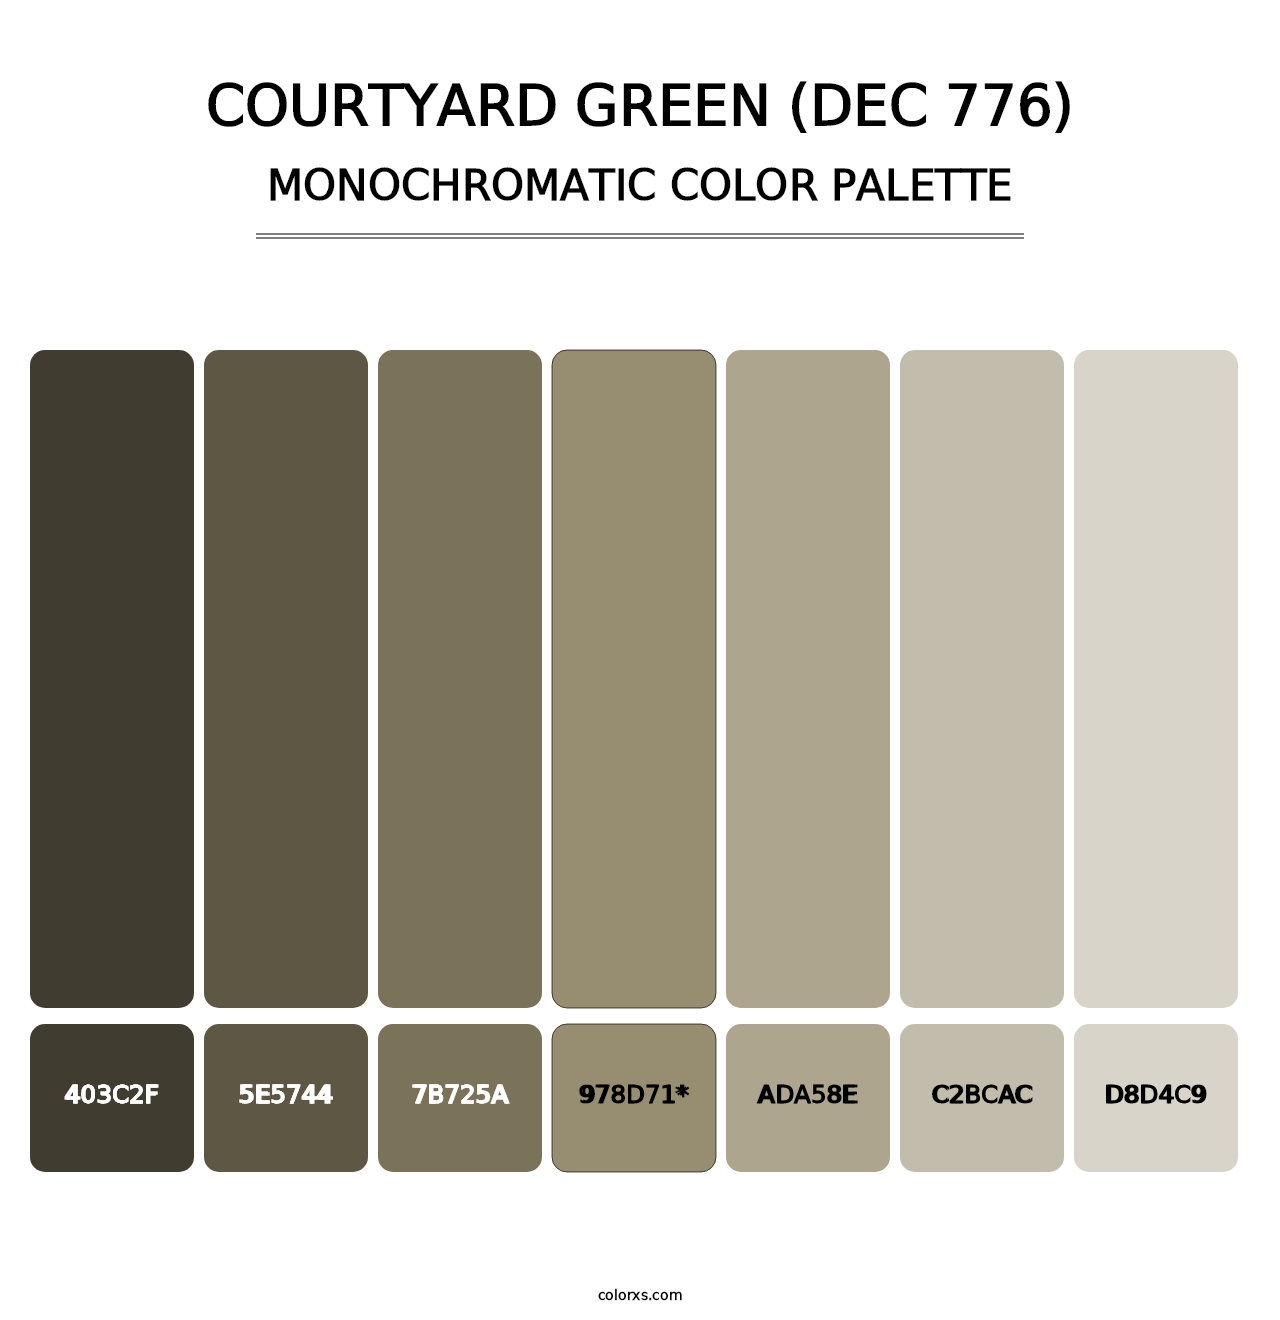 Courtyard Green (DEC 776) - Monochromatic Color Palette